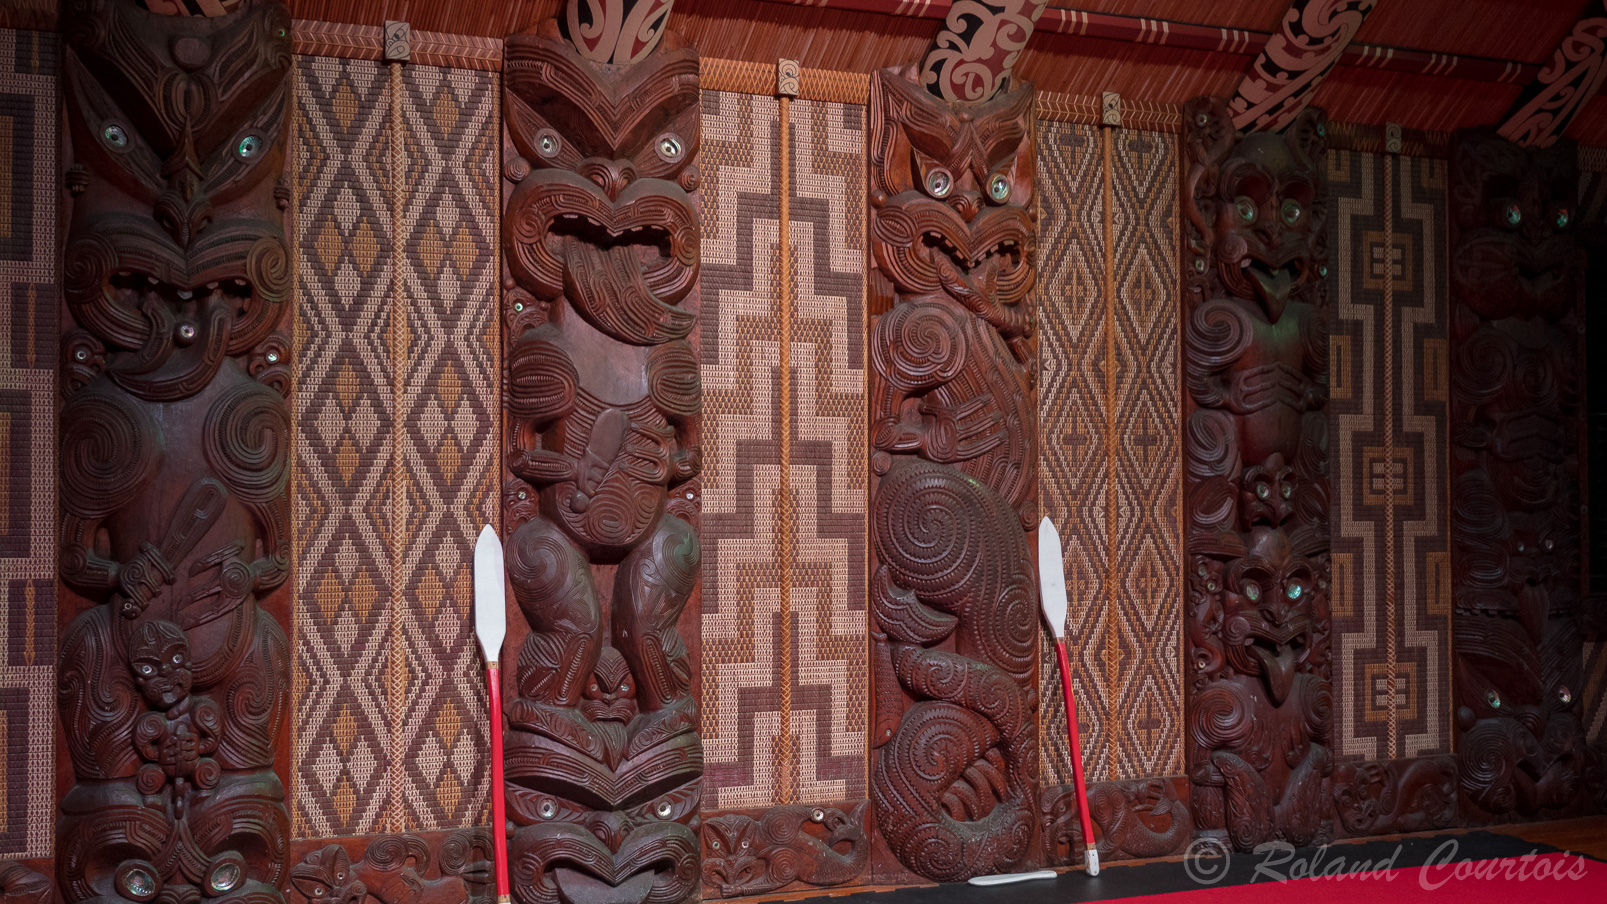 L'intérieur du Te Whare Runanga (salle de réunion) est décoré de sculptures provenant des différentes tribus maoris. Cette salle constituent un élément important de la culture maorie,